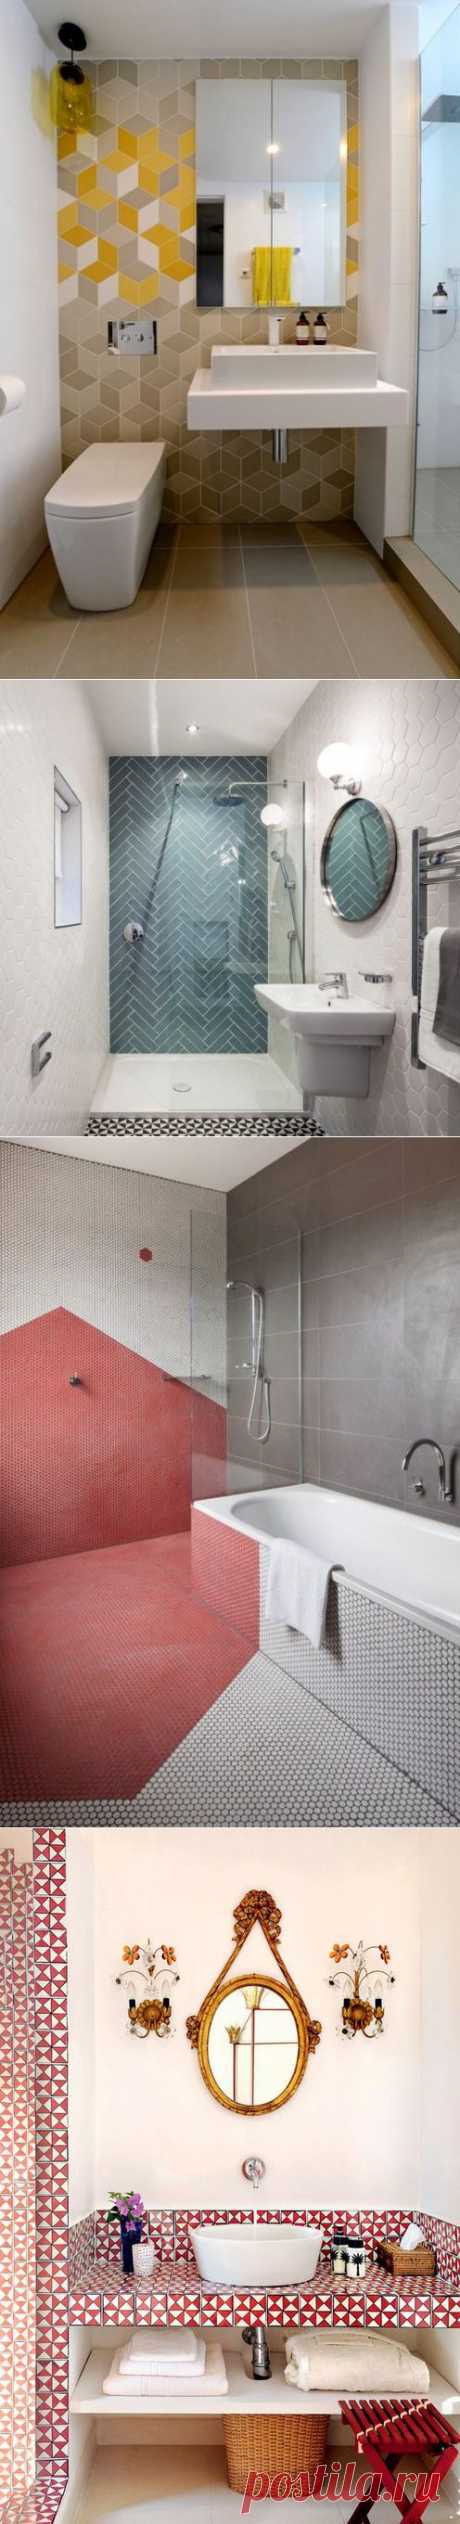 Геометрический Декор: Идеи для ванных комнат